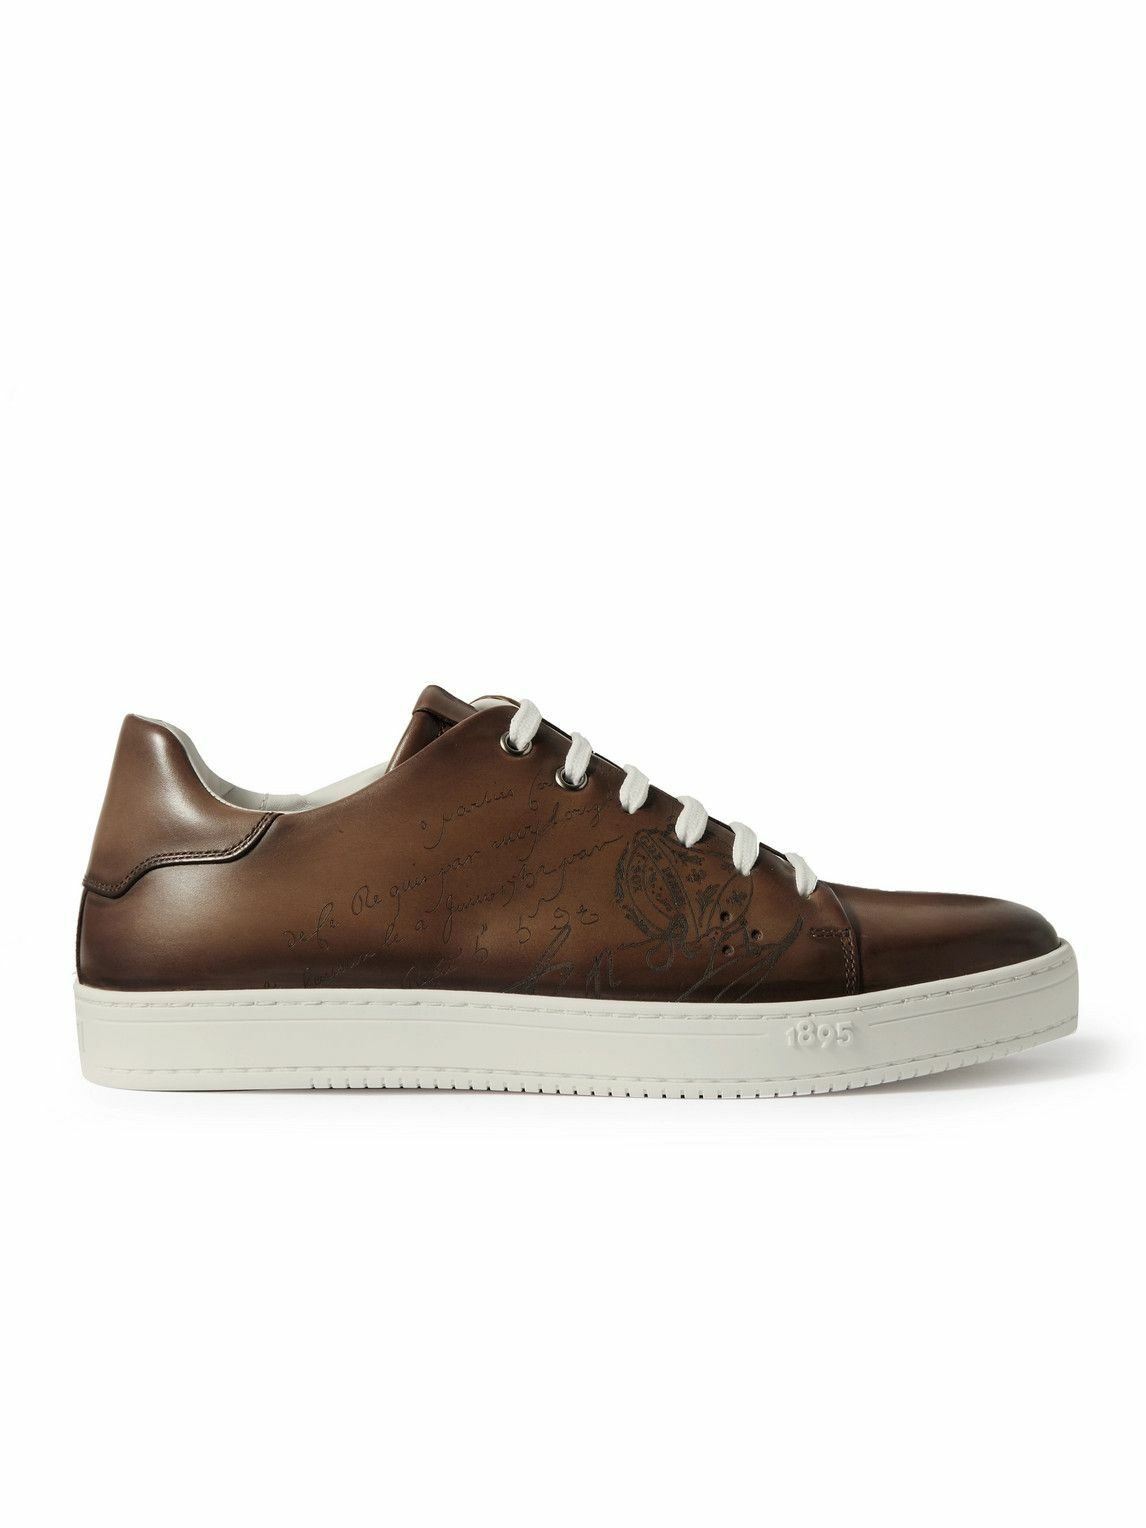 Berluti - Scritto Venezia Leather Sneakers - Brown Berluti